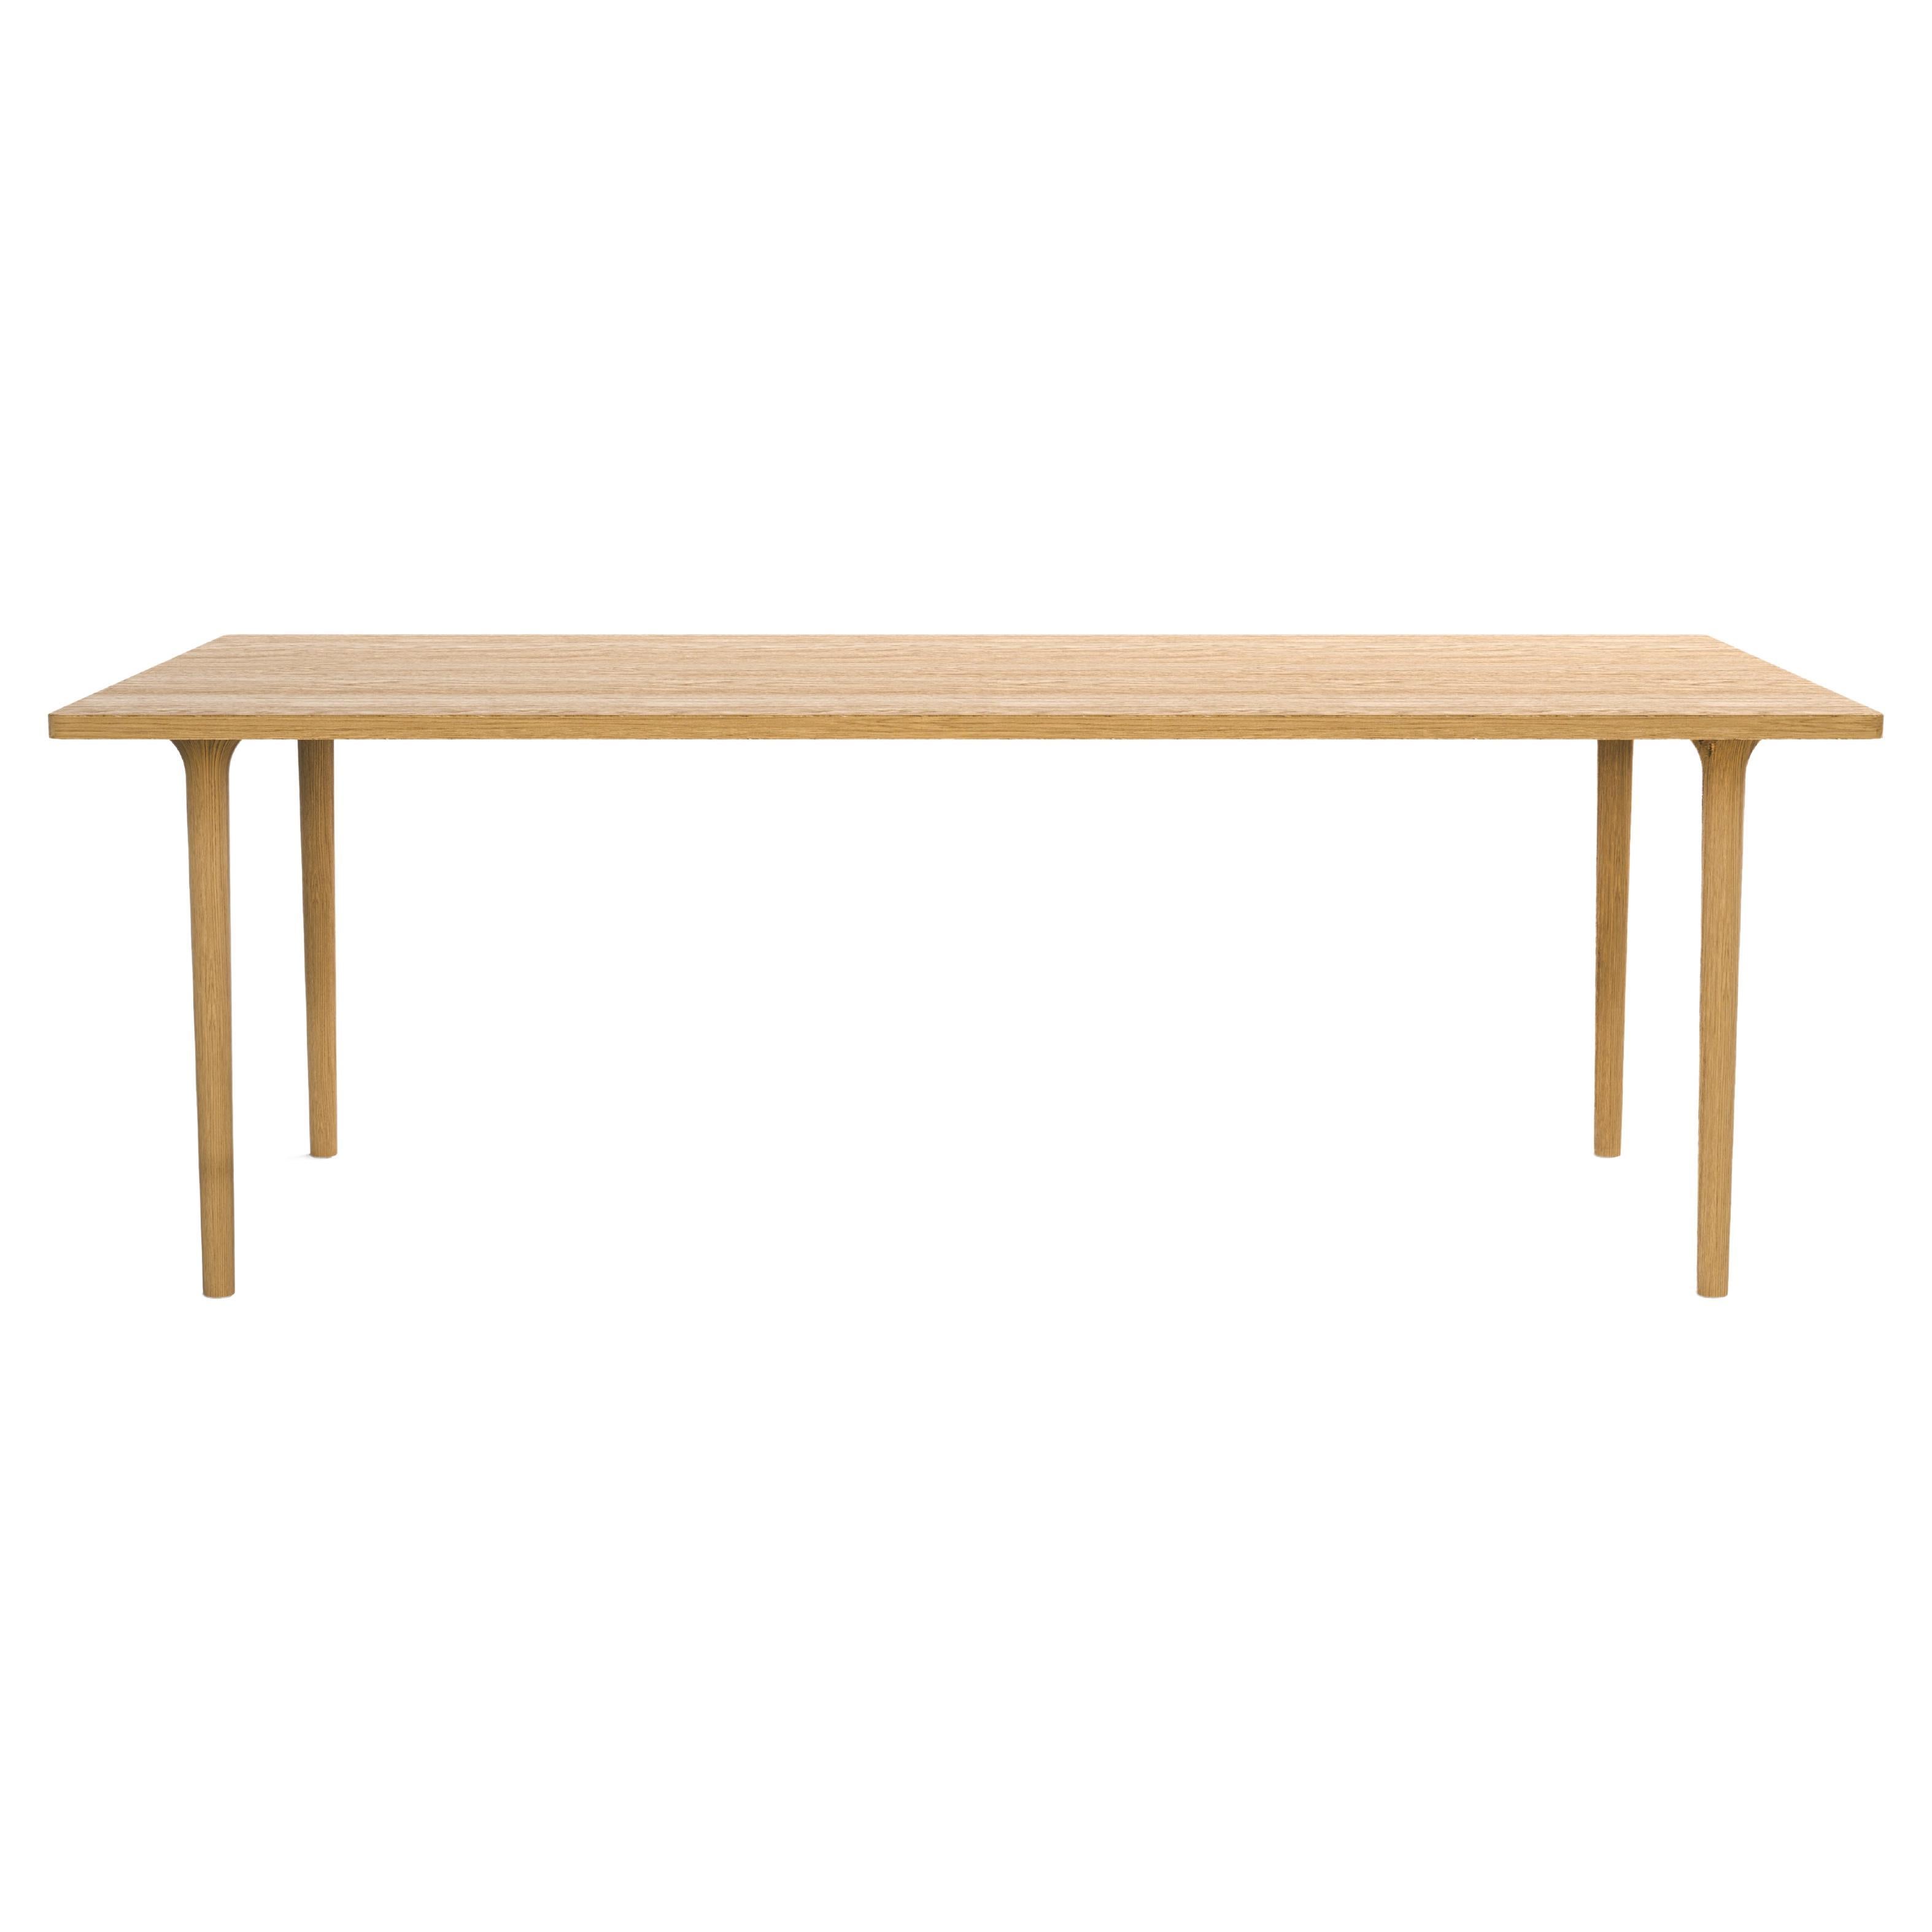 Table moderne minimaliste rectangulaire en bois de chêne